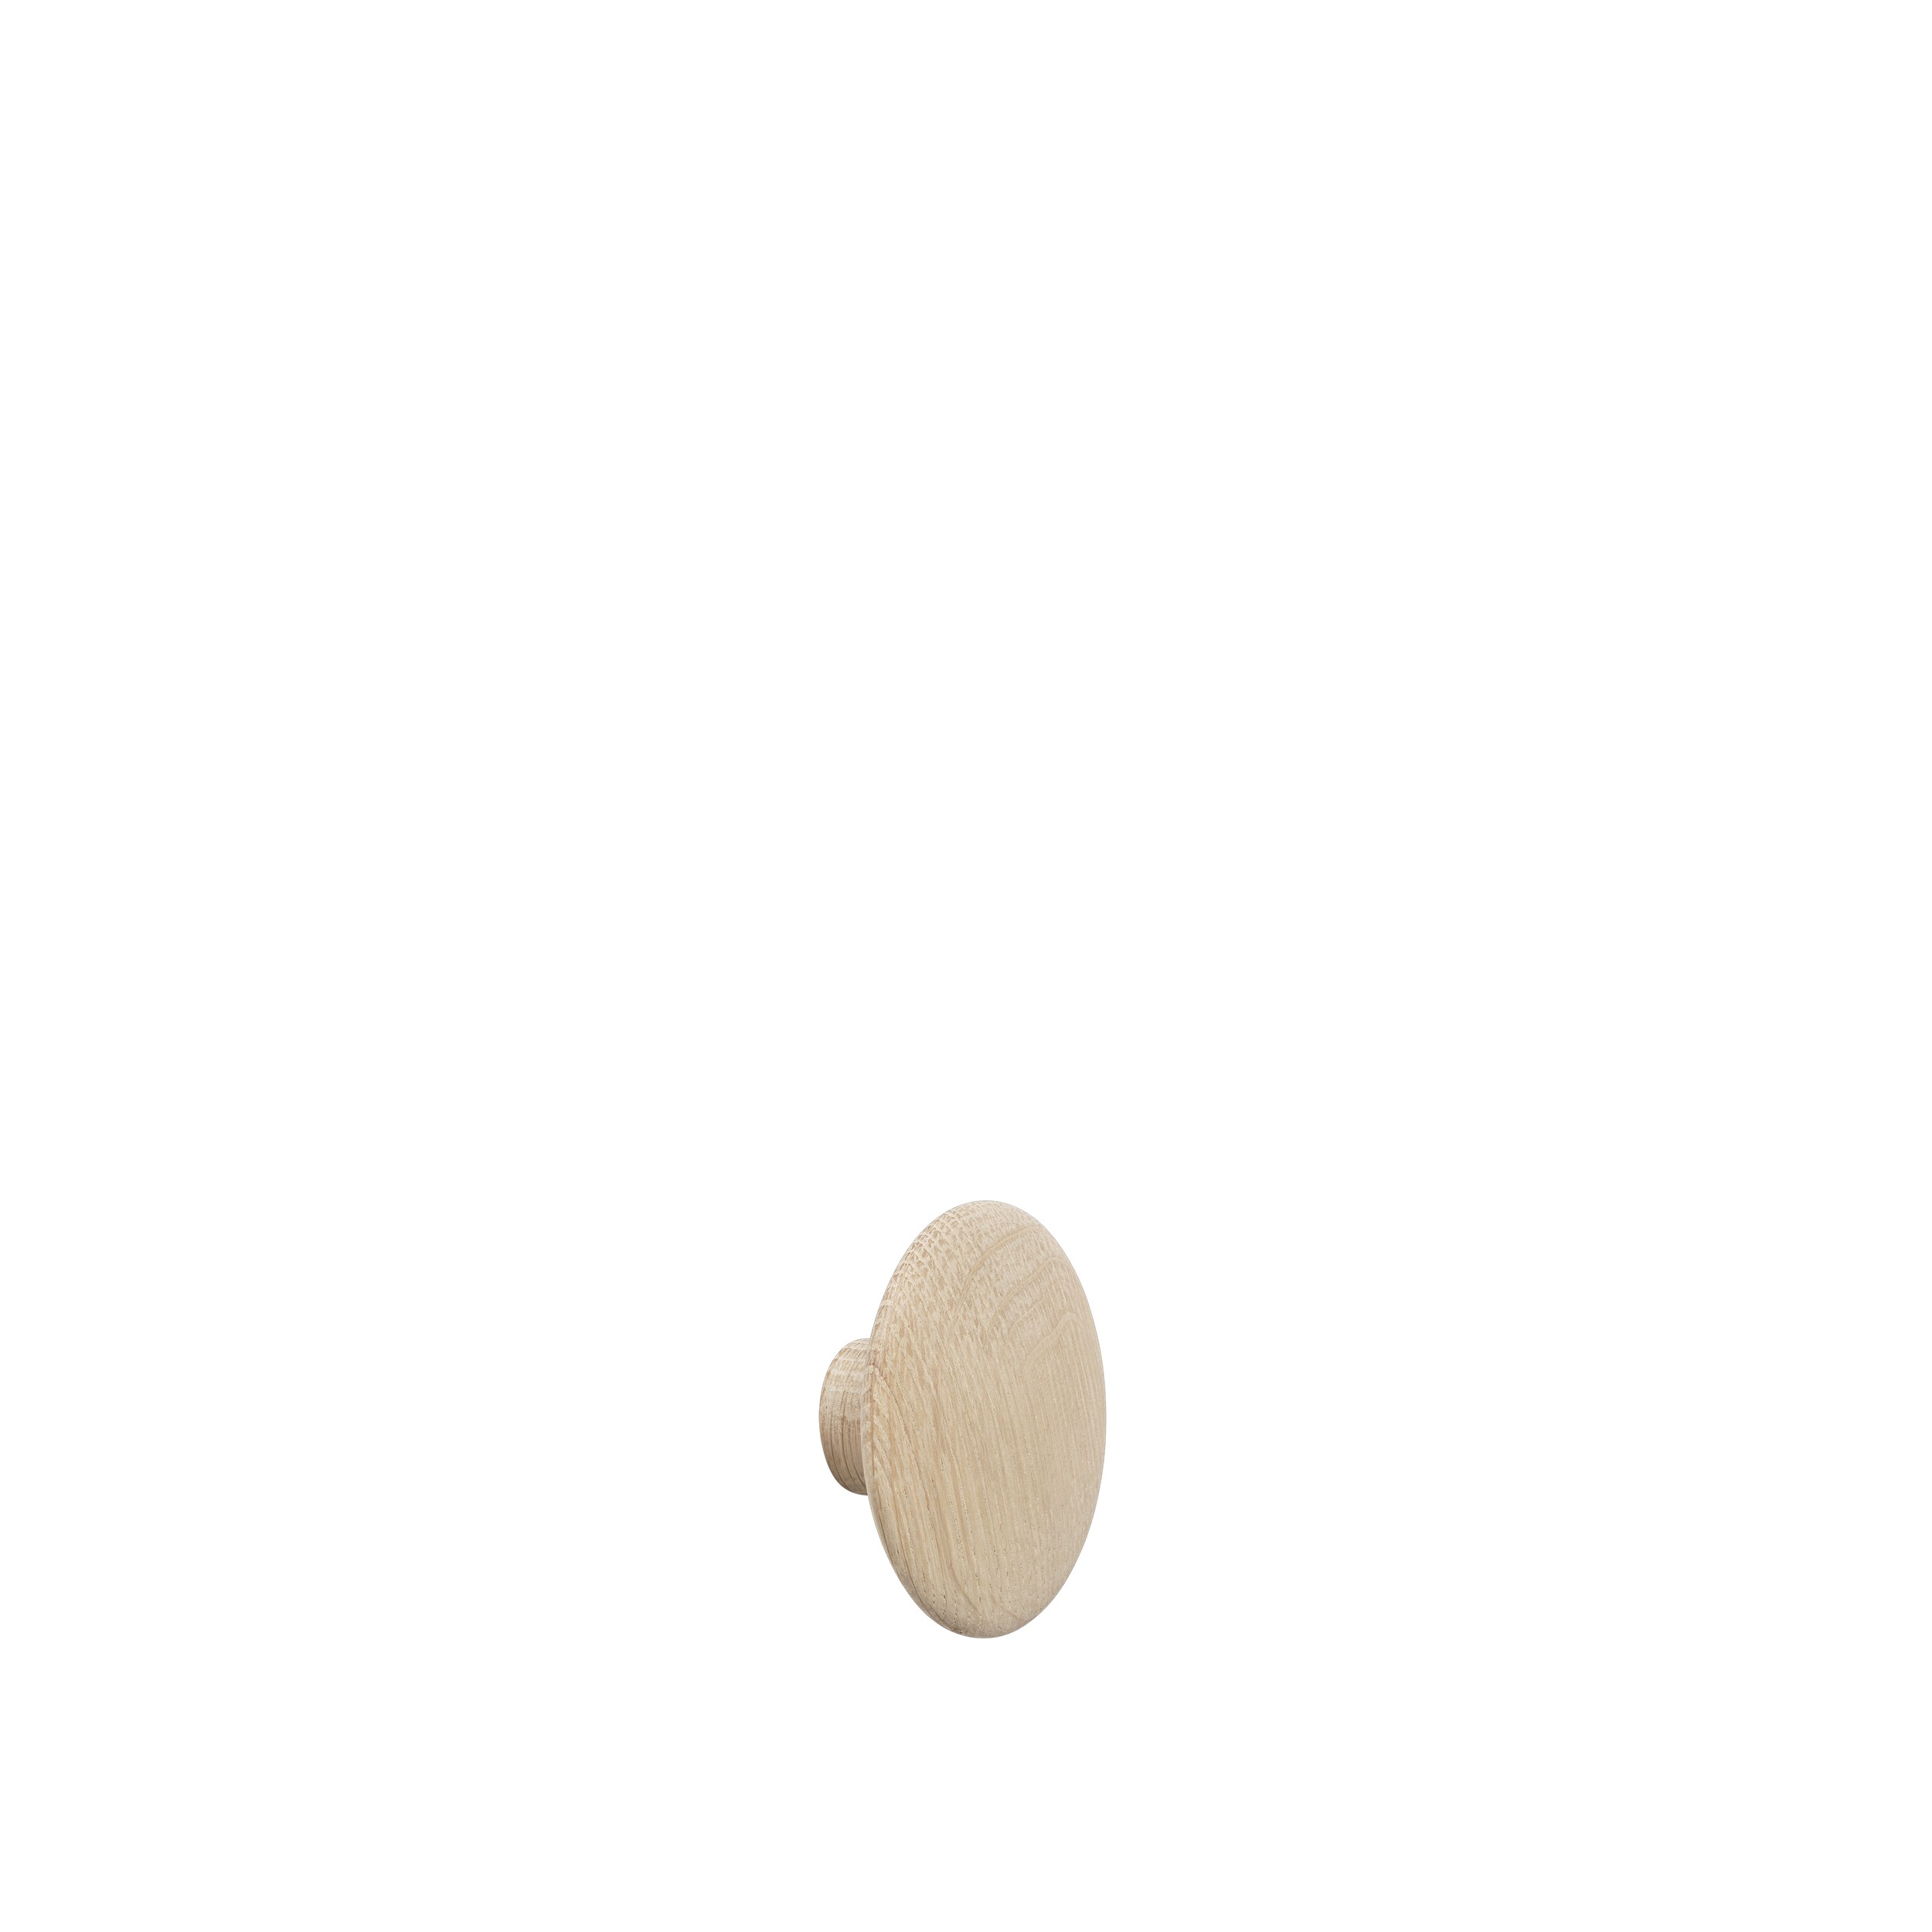 Dot wood X-small Ø 6,5 cm oak